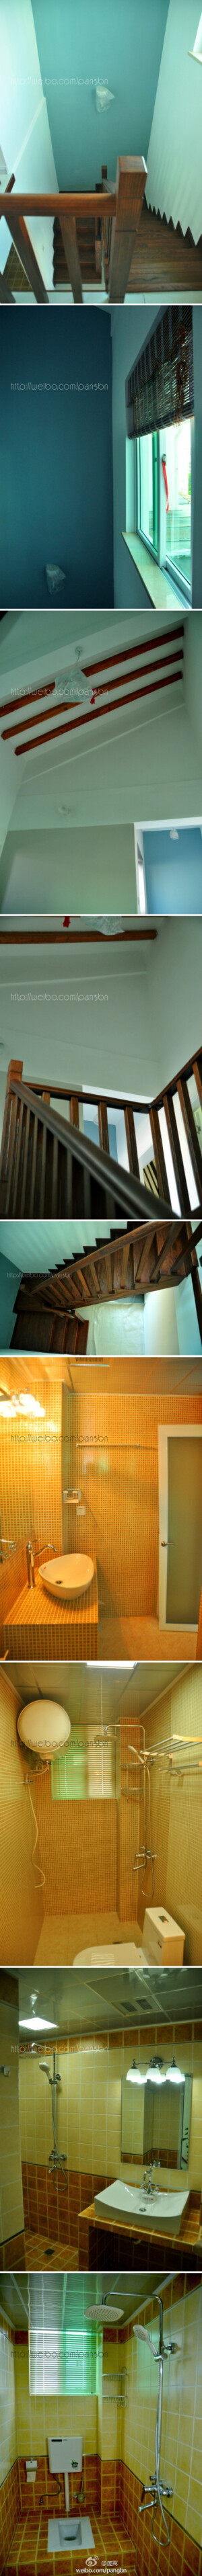 我家系列——楼梯+卫生 间 http://weibo.com/pangbn